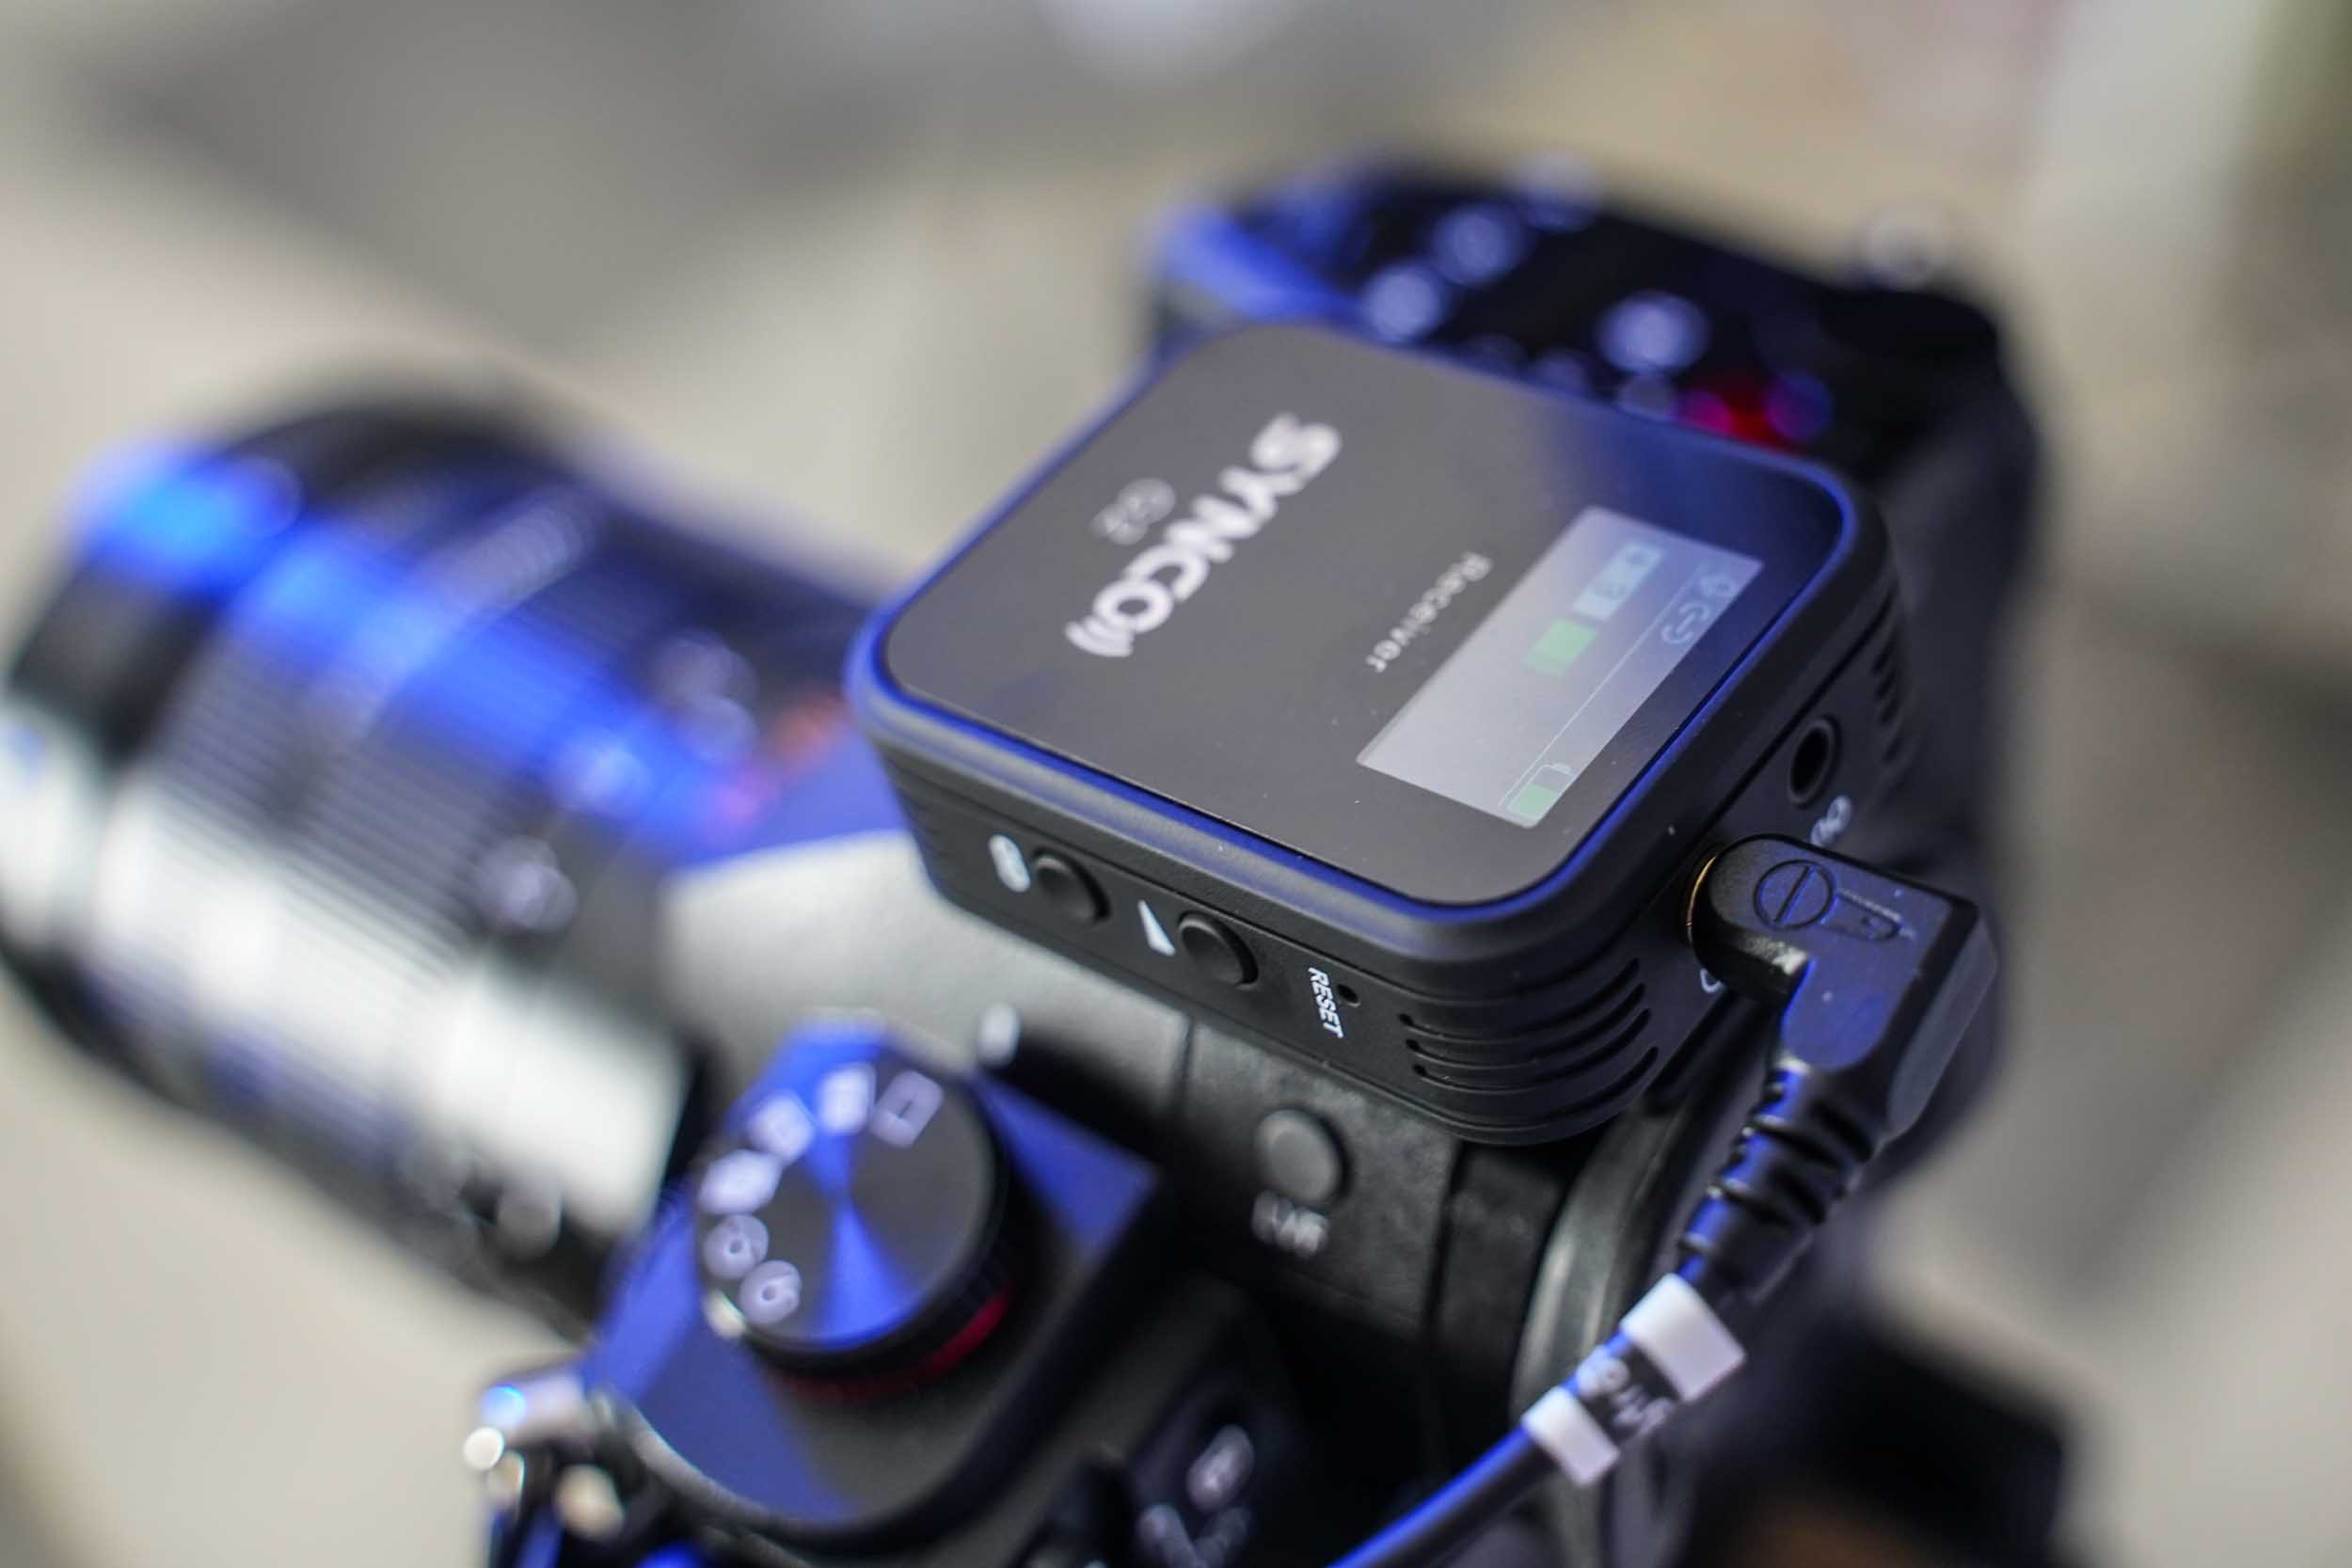 Synco G2 A1 podłączone do aparatu Sony